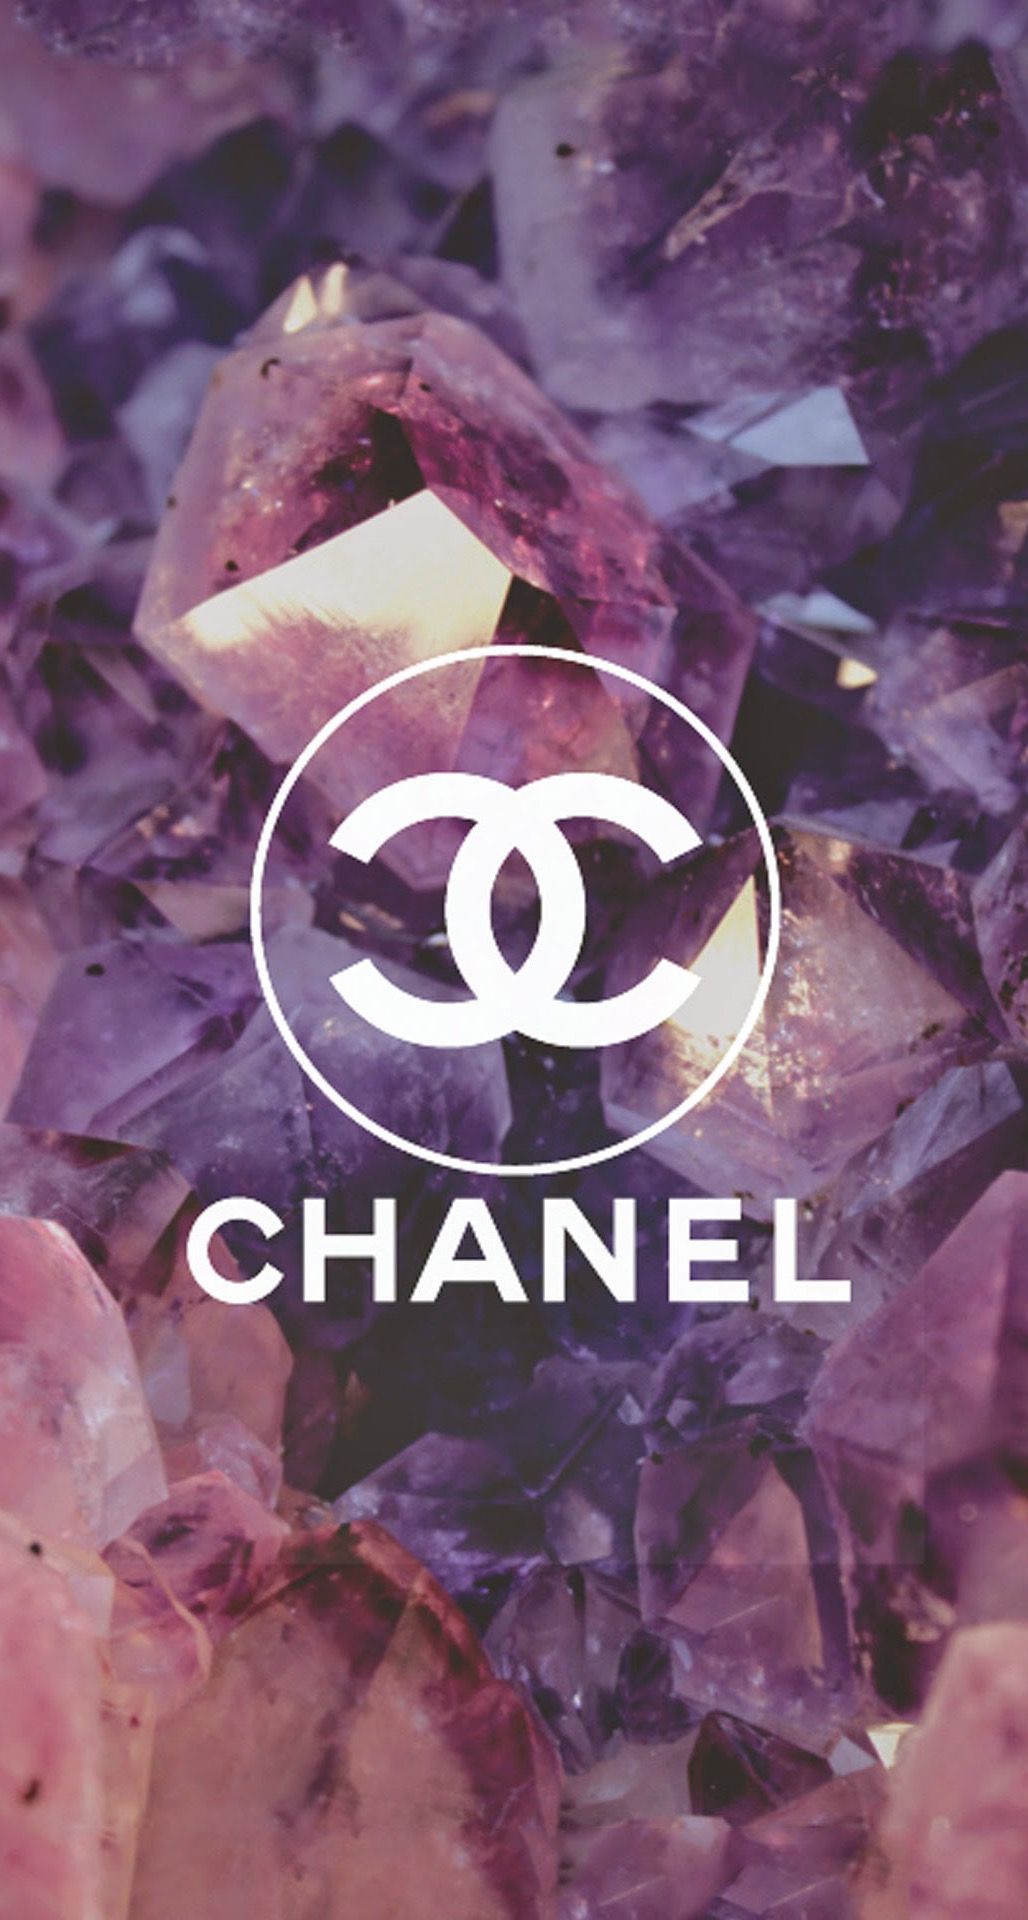 Coco Chanel Logo Diamonds iPhone 6 Plus HD Wallpaper. Chanel wallpaper, Coco chanel wallpaper, iPhone 5s wallpaper